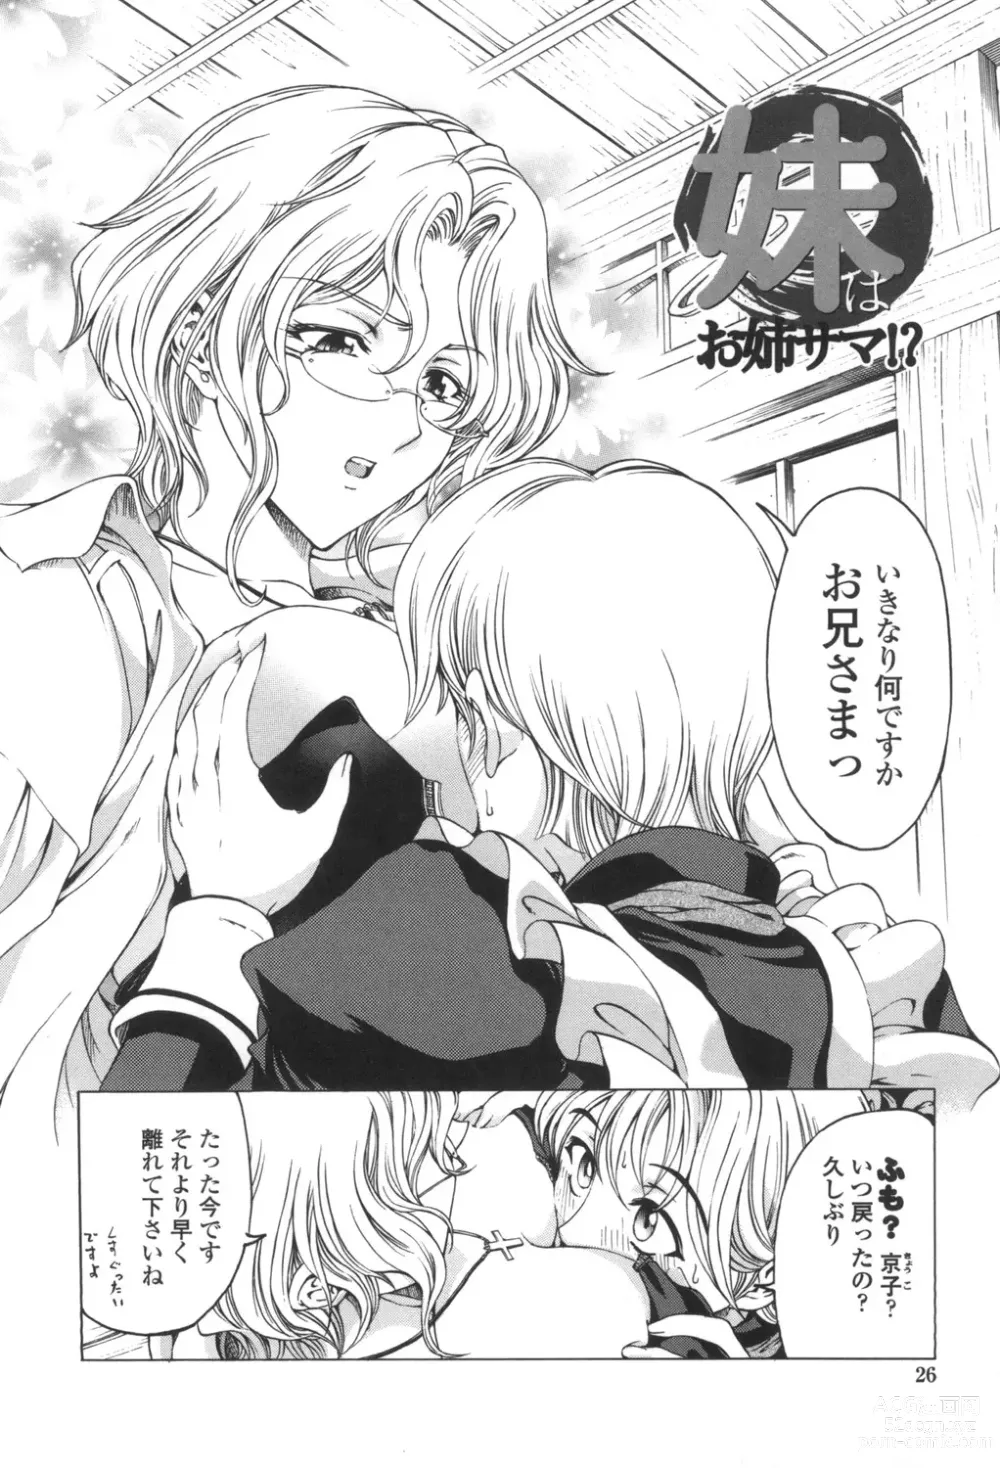 Page 27 of manga Maruimo!?